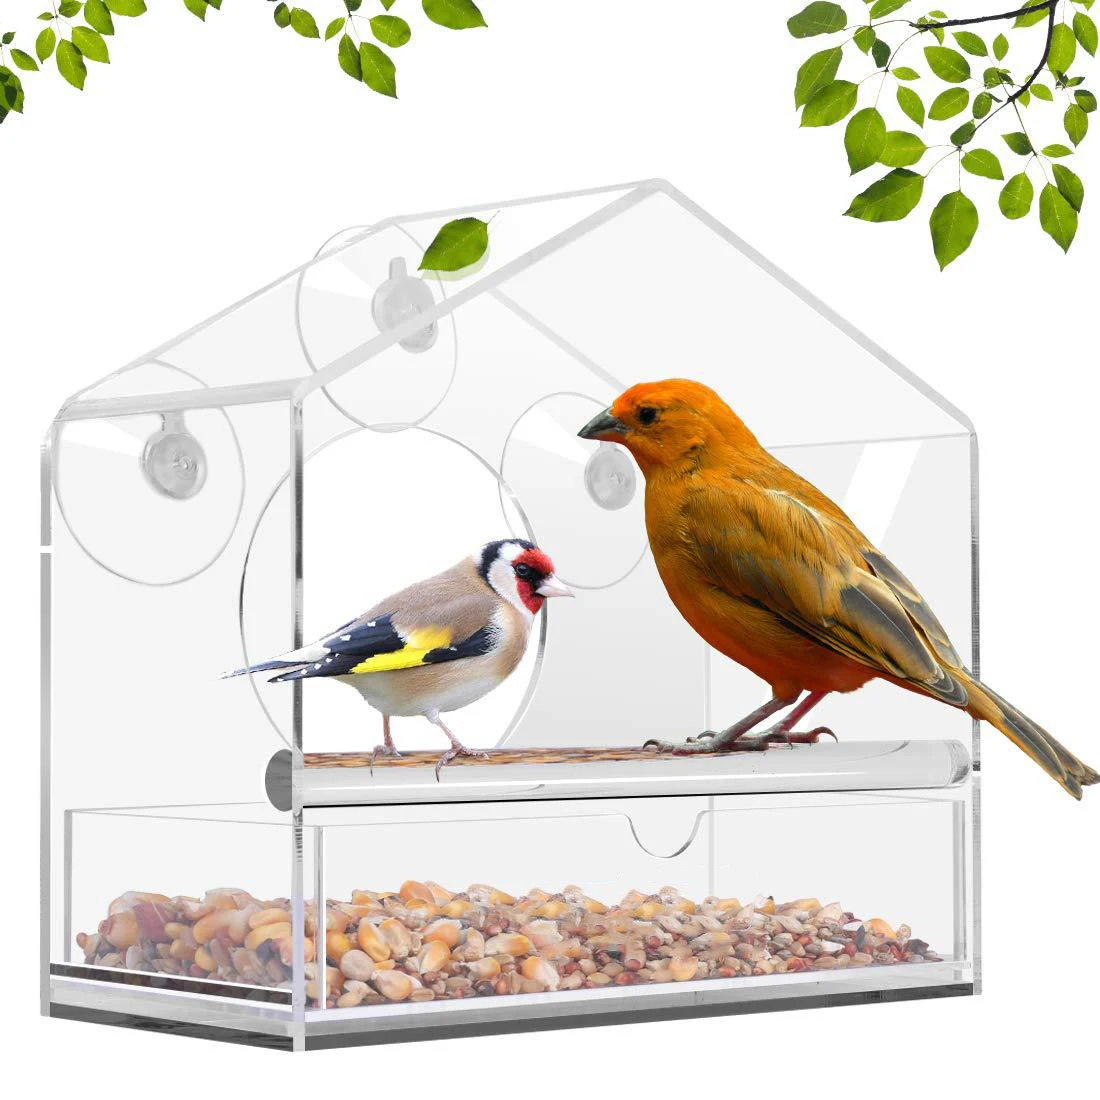 Bird Feeder Acrylic Transparent Outdoor Window Birdfeeder Tray Bird House Pet Feeder Suction Cup Installation House Type Feeder